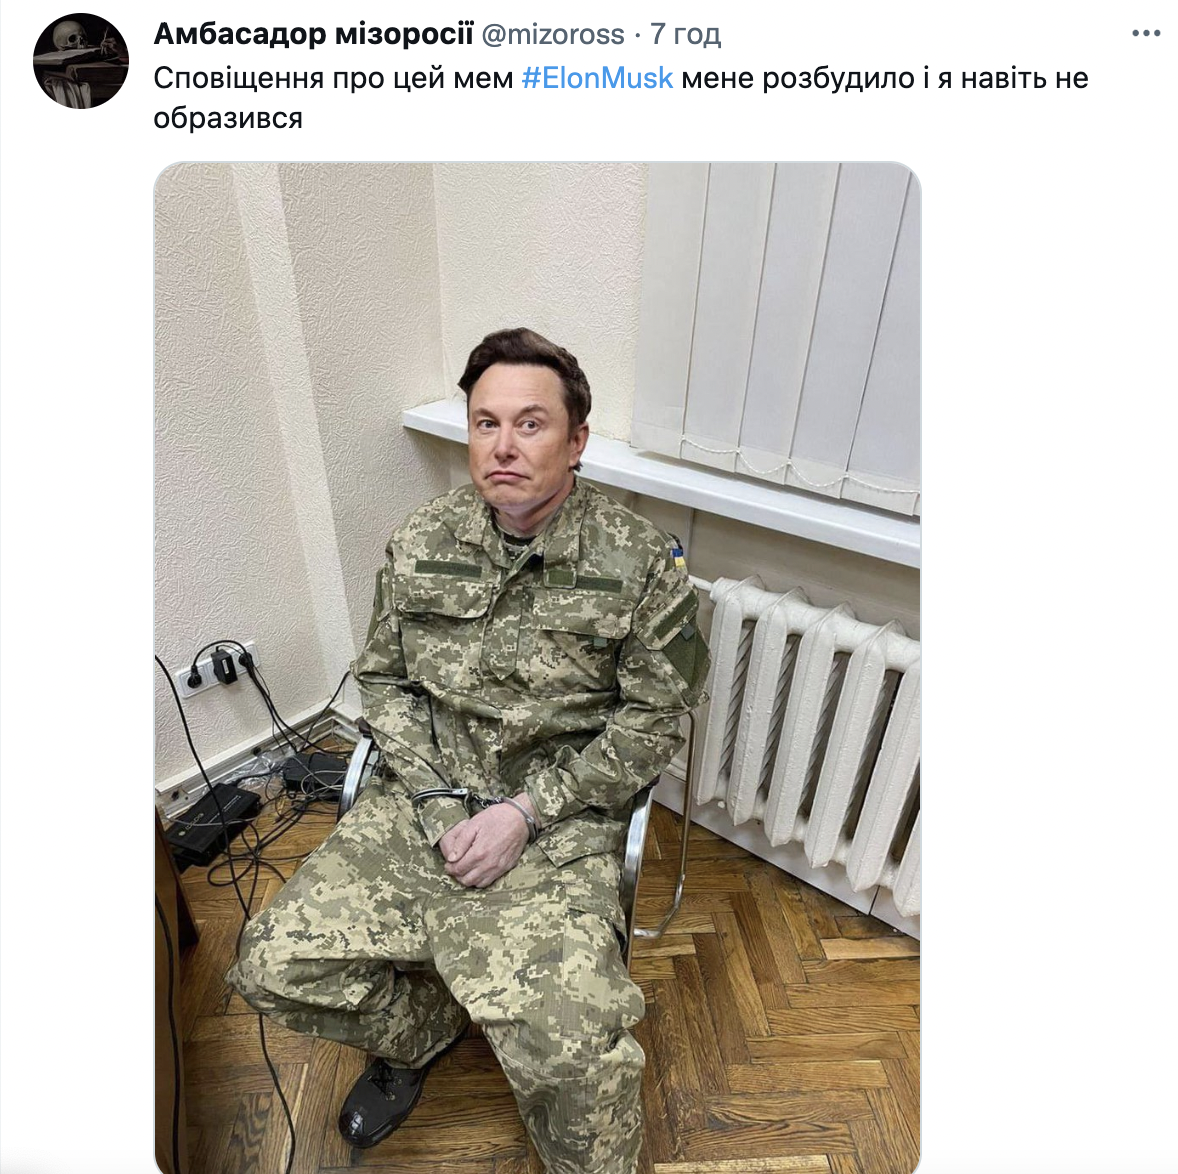 'Ватник года': Сеть взорвали фотожабы из-за скандала с 'твитами Маска' о войне в Украине